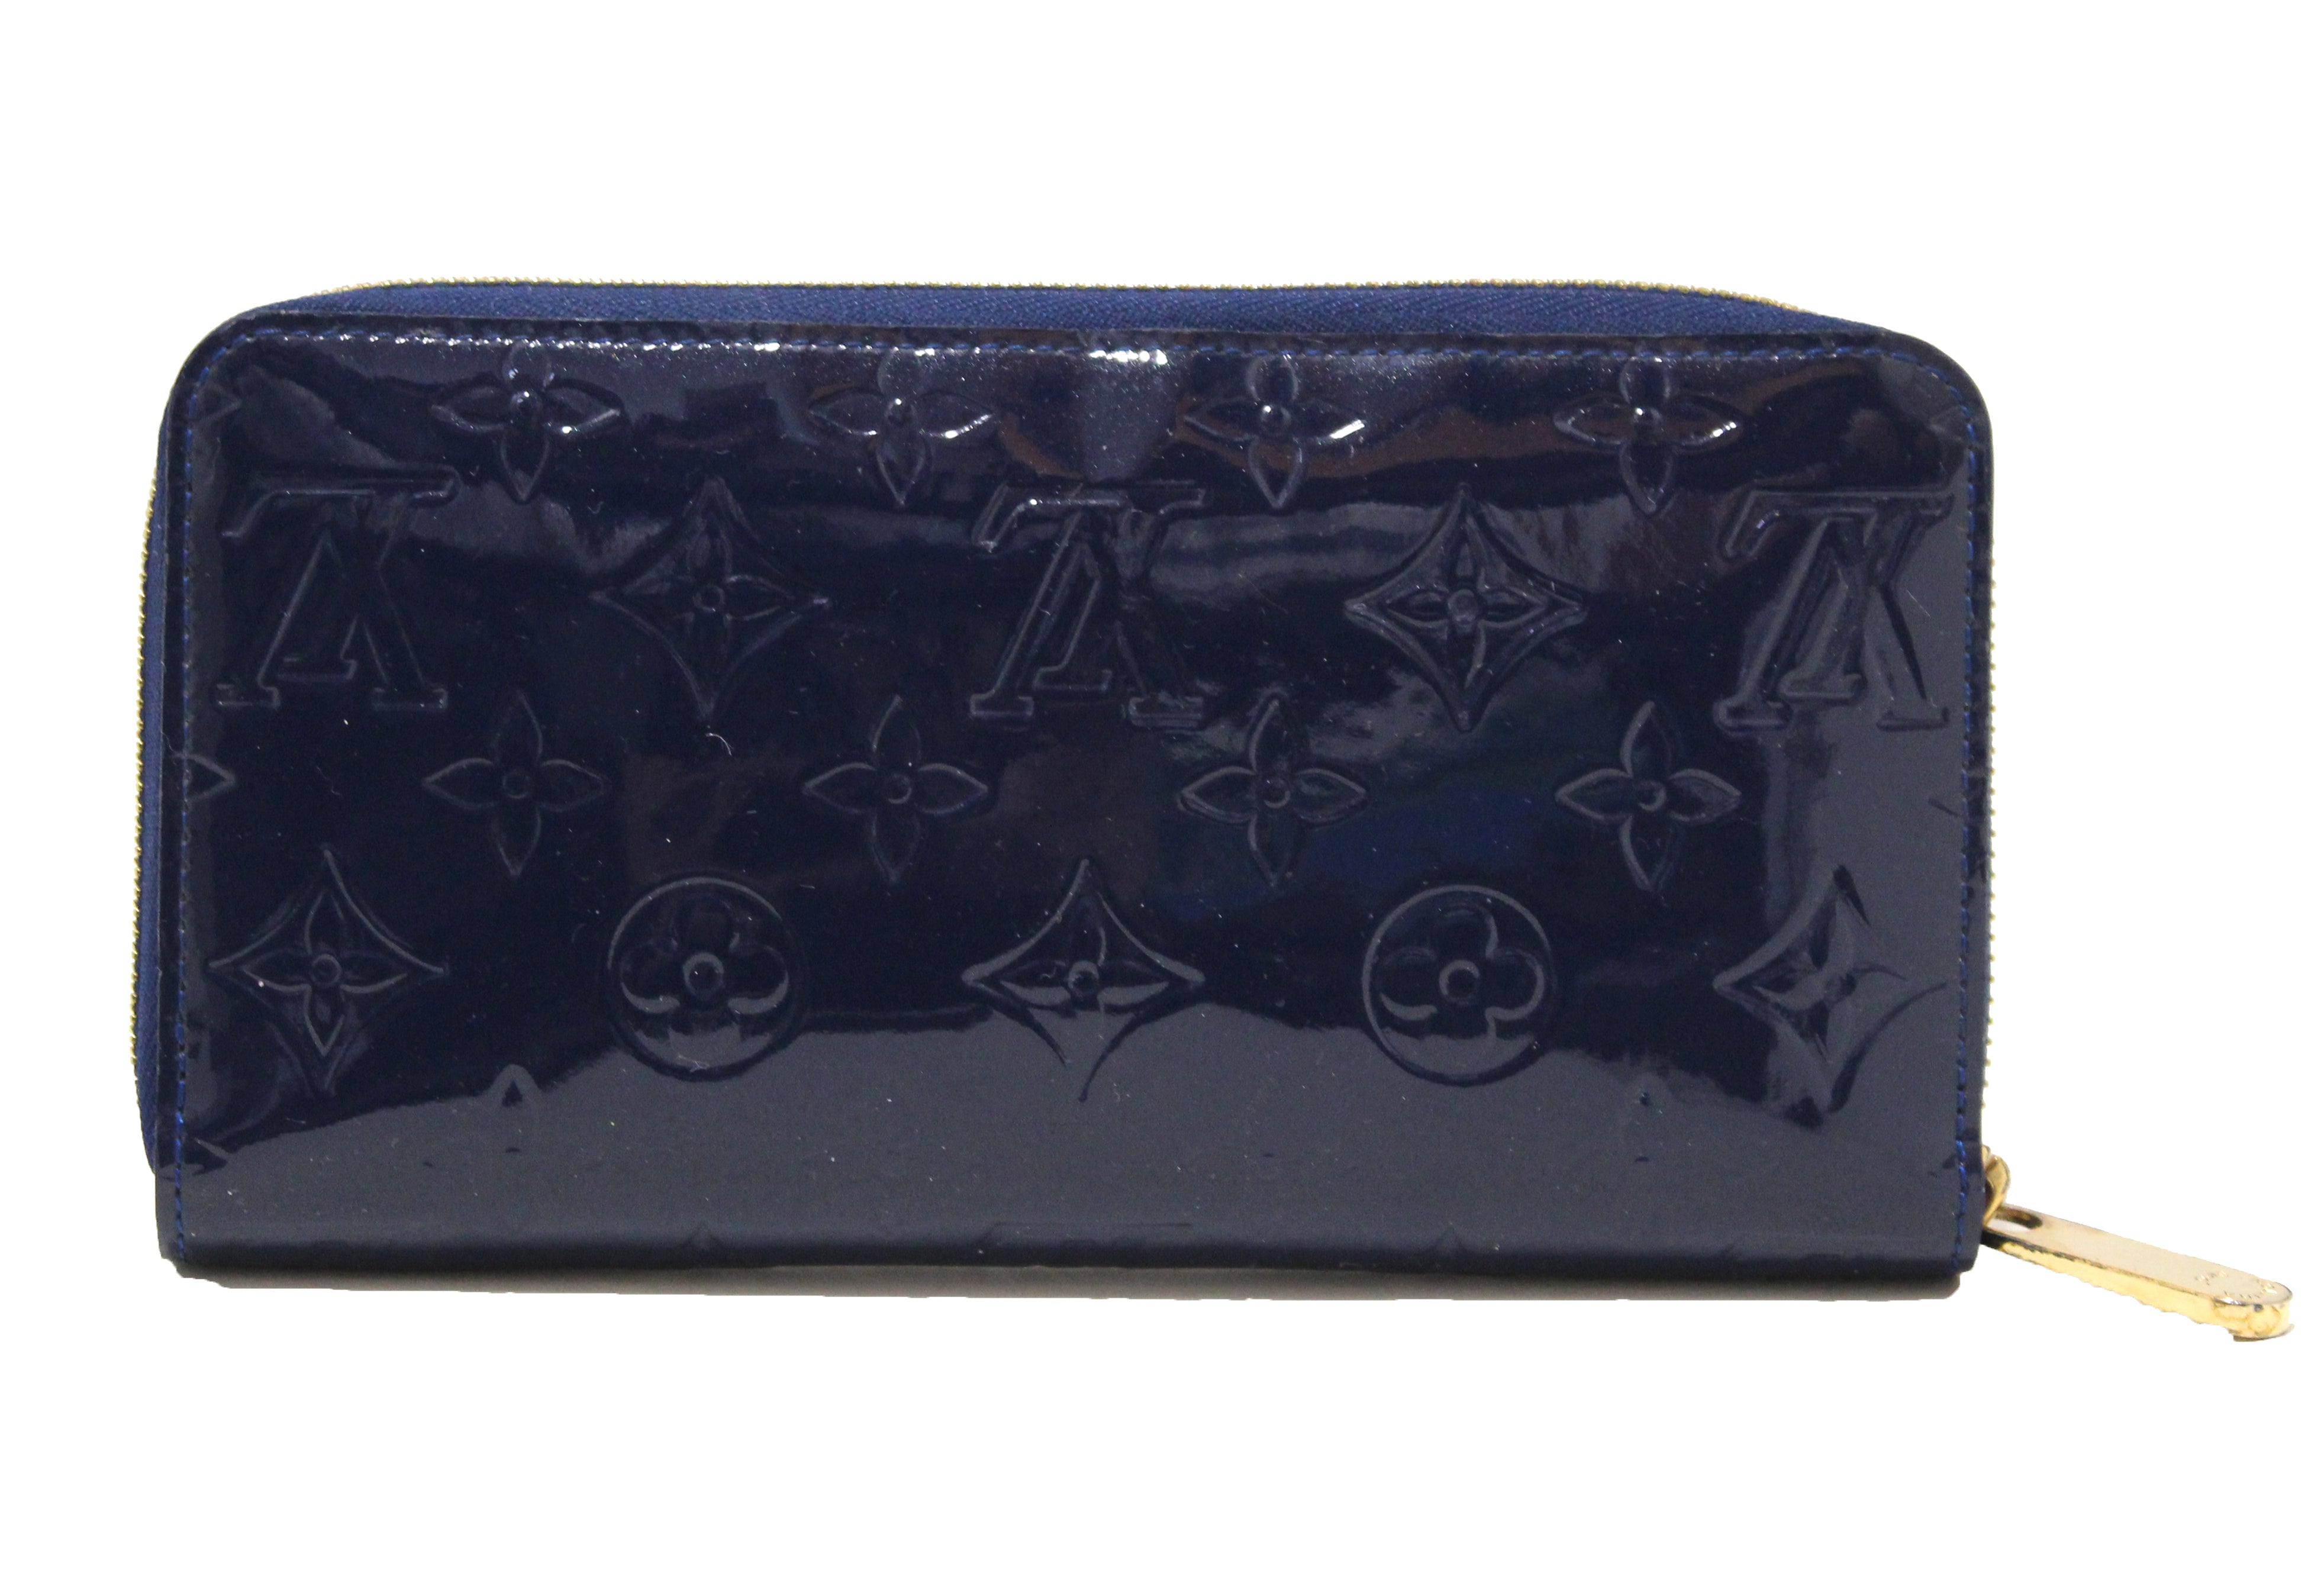 Authentic Louis Vuitton Monogram Blue Vernis Leather Zippy Wallet